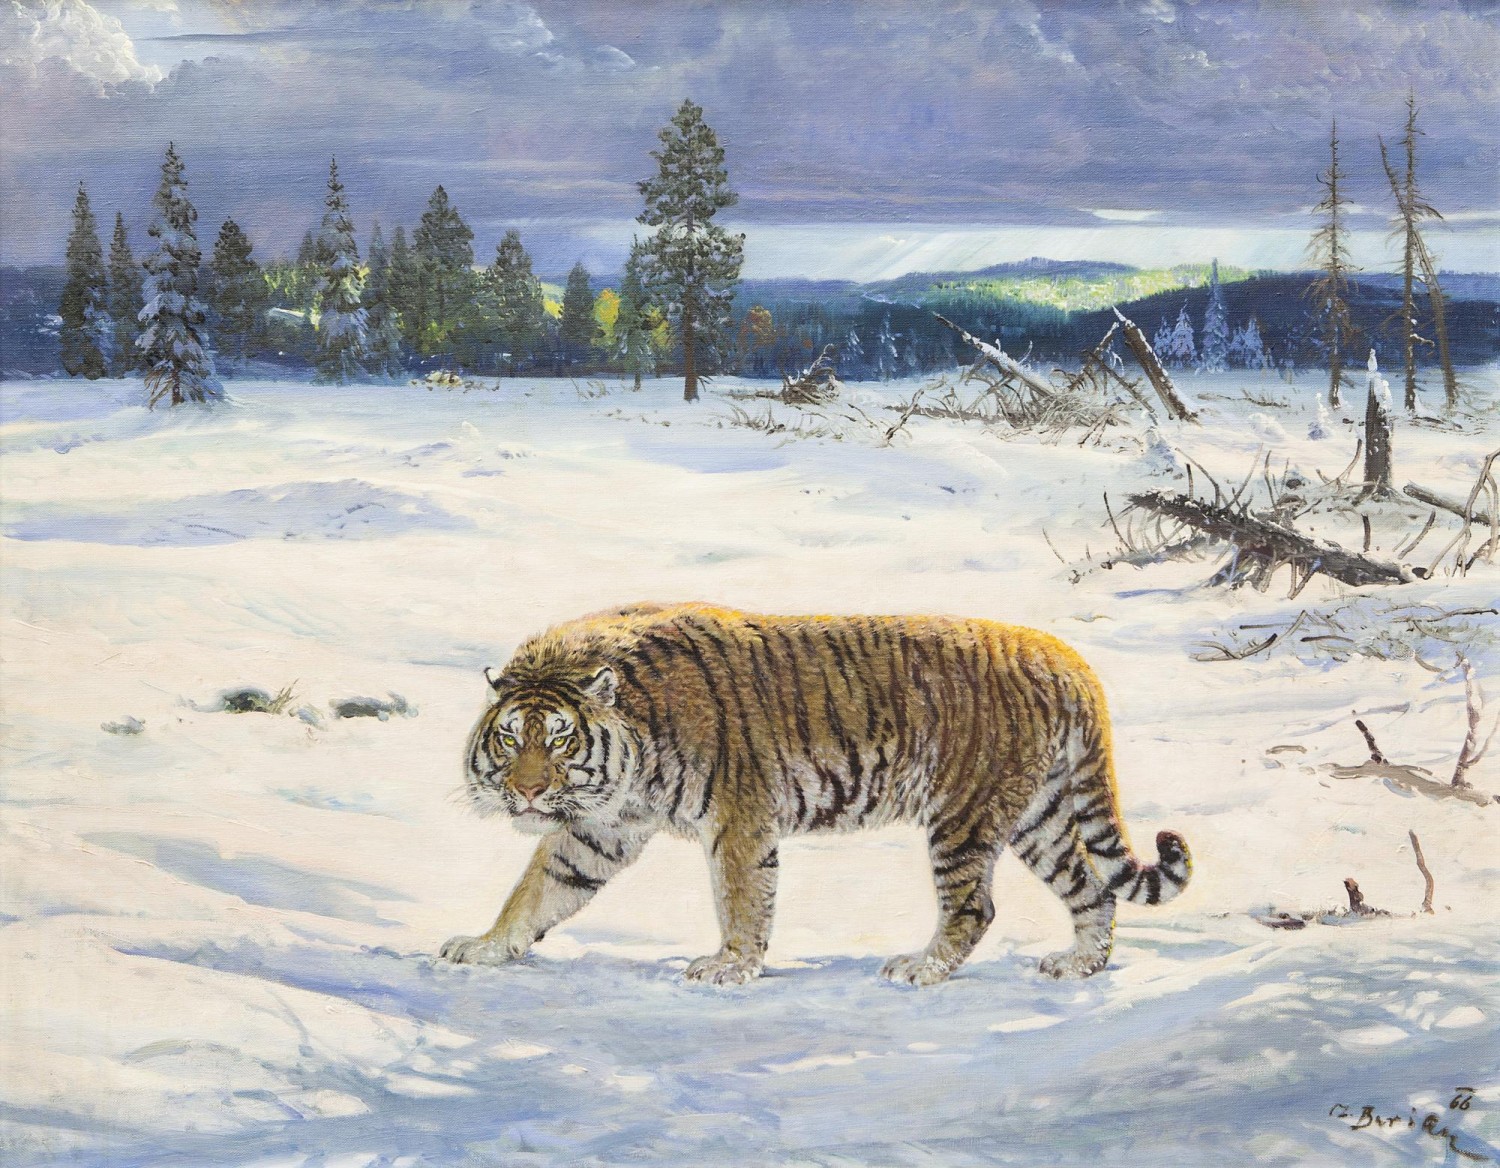 Zdeněk Burian: Tygr ussurijský, 1966, olej na plátně, 74,5 x 94,5 cm,  European Arts 24. 9. 2017, cena: 3 100 000 Kč